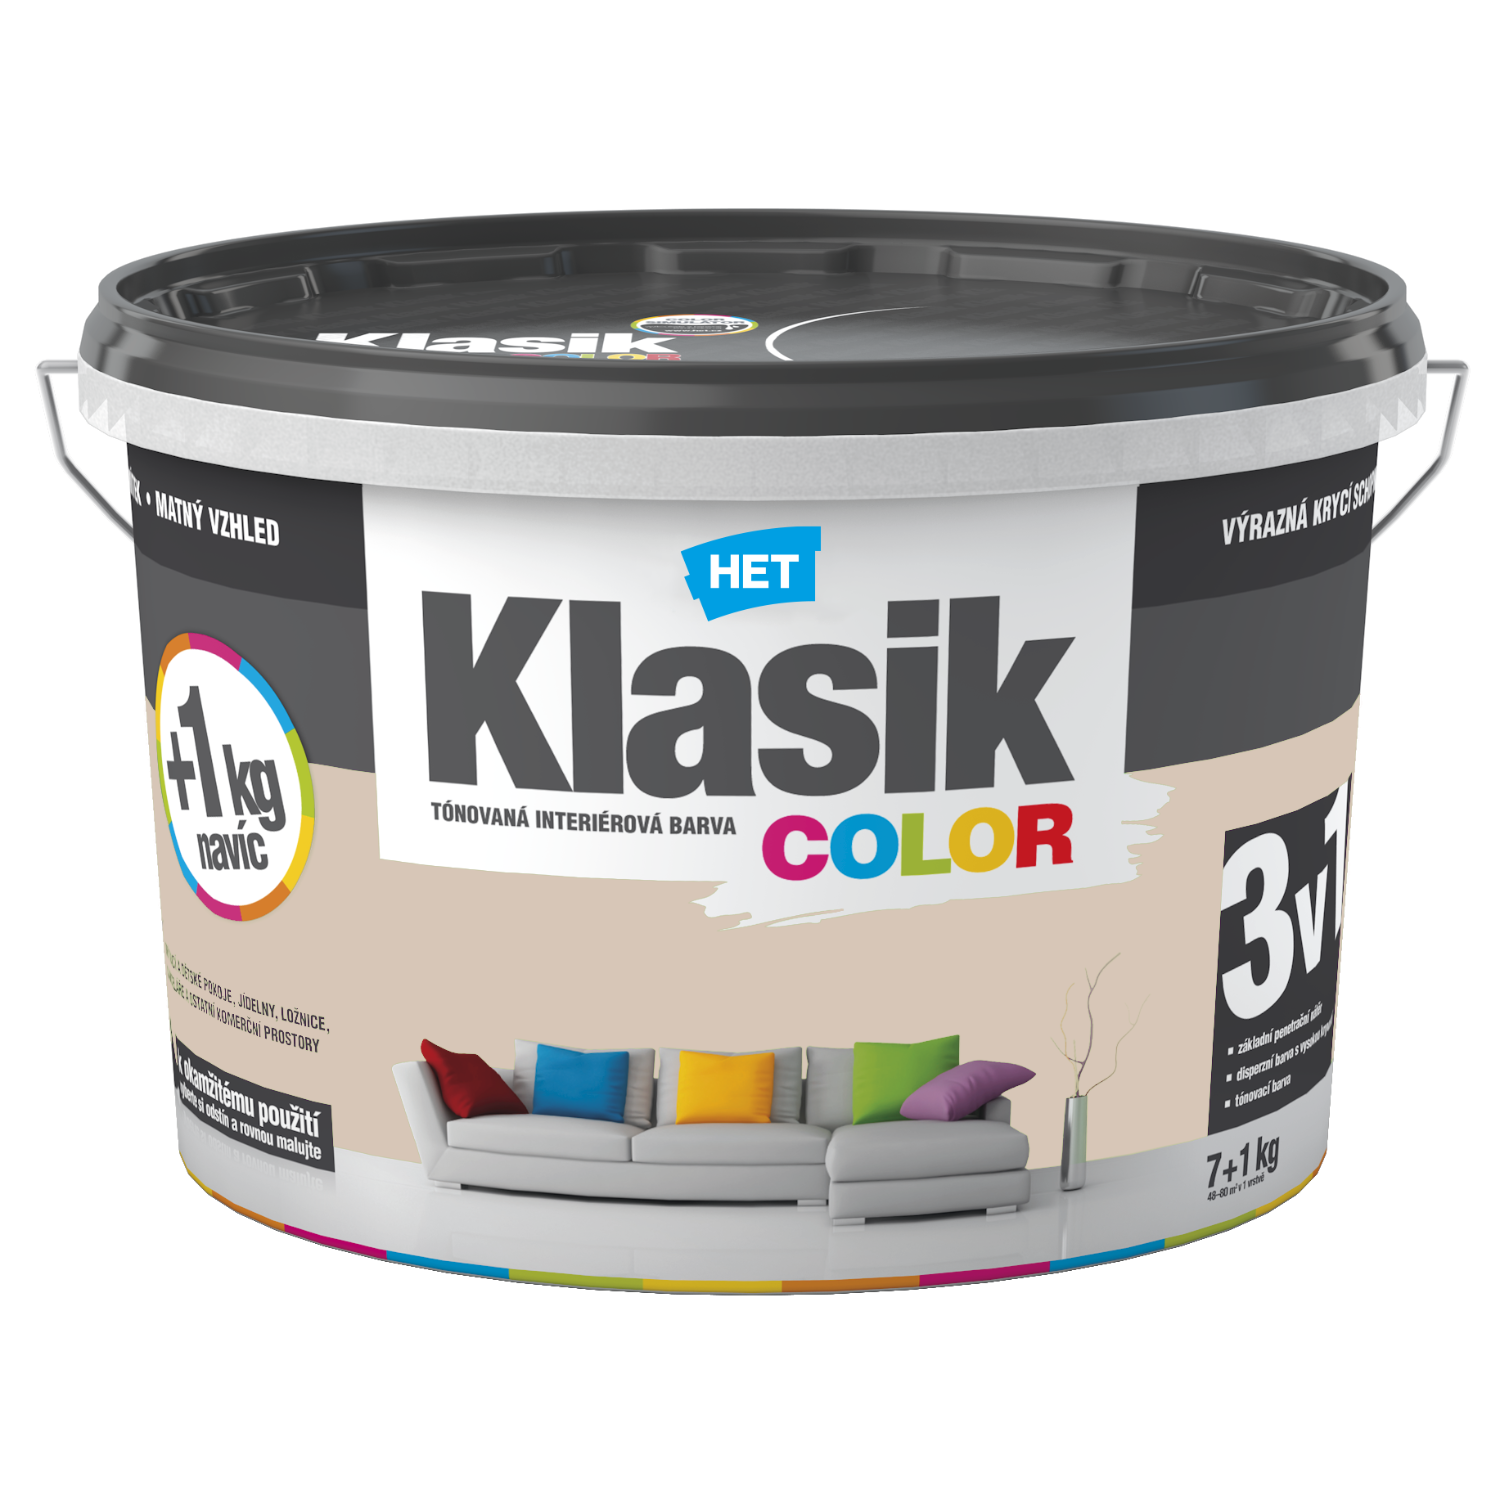 HET Klasik COLOR tónovaná interiérová akrylátová disperzná oteruvzdorná farba 7 kg + 1 kg zdarma, KC0238 - béžový muškátový